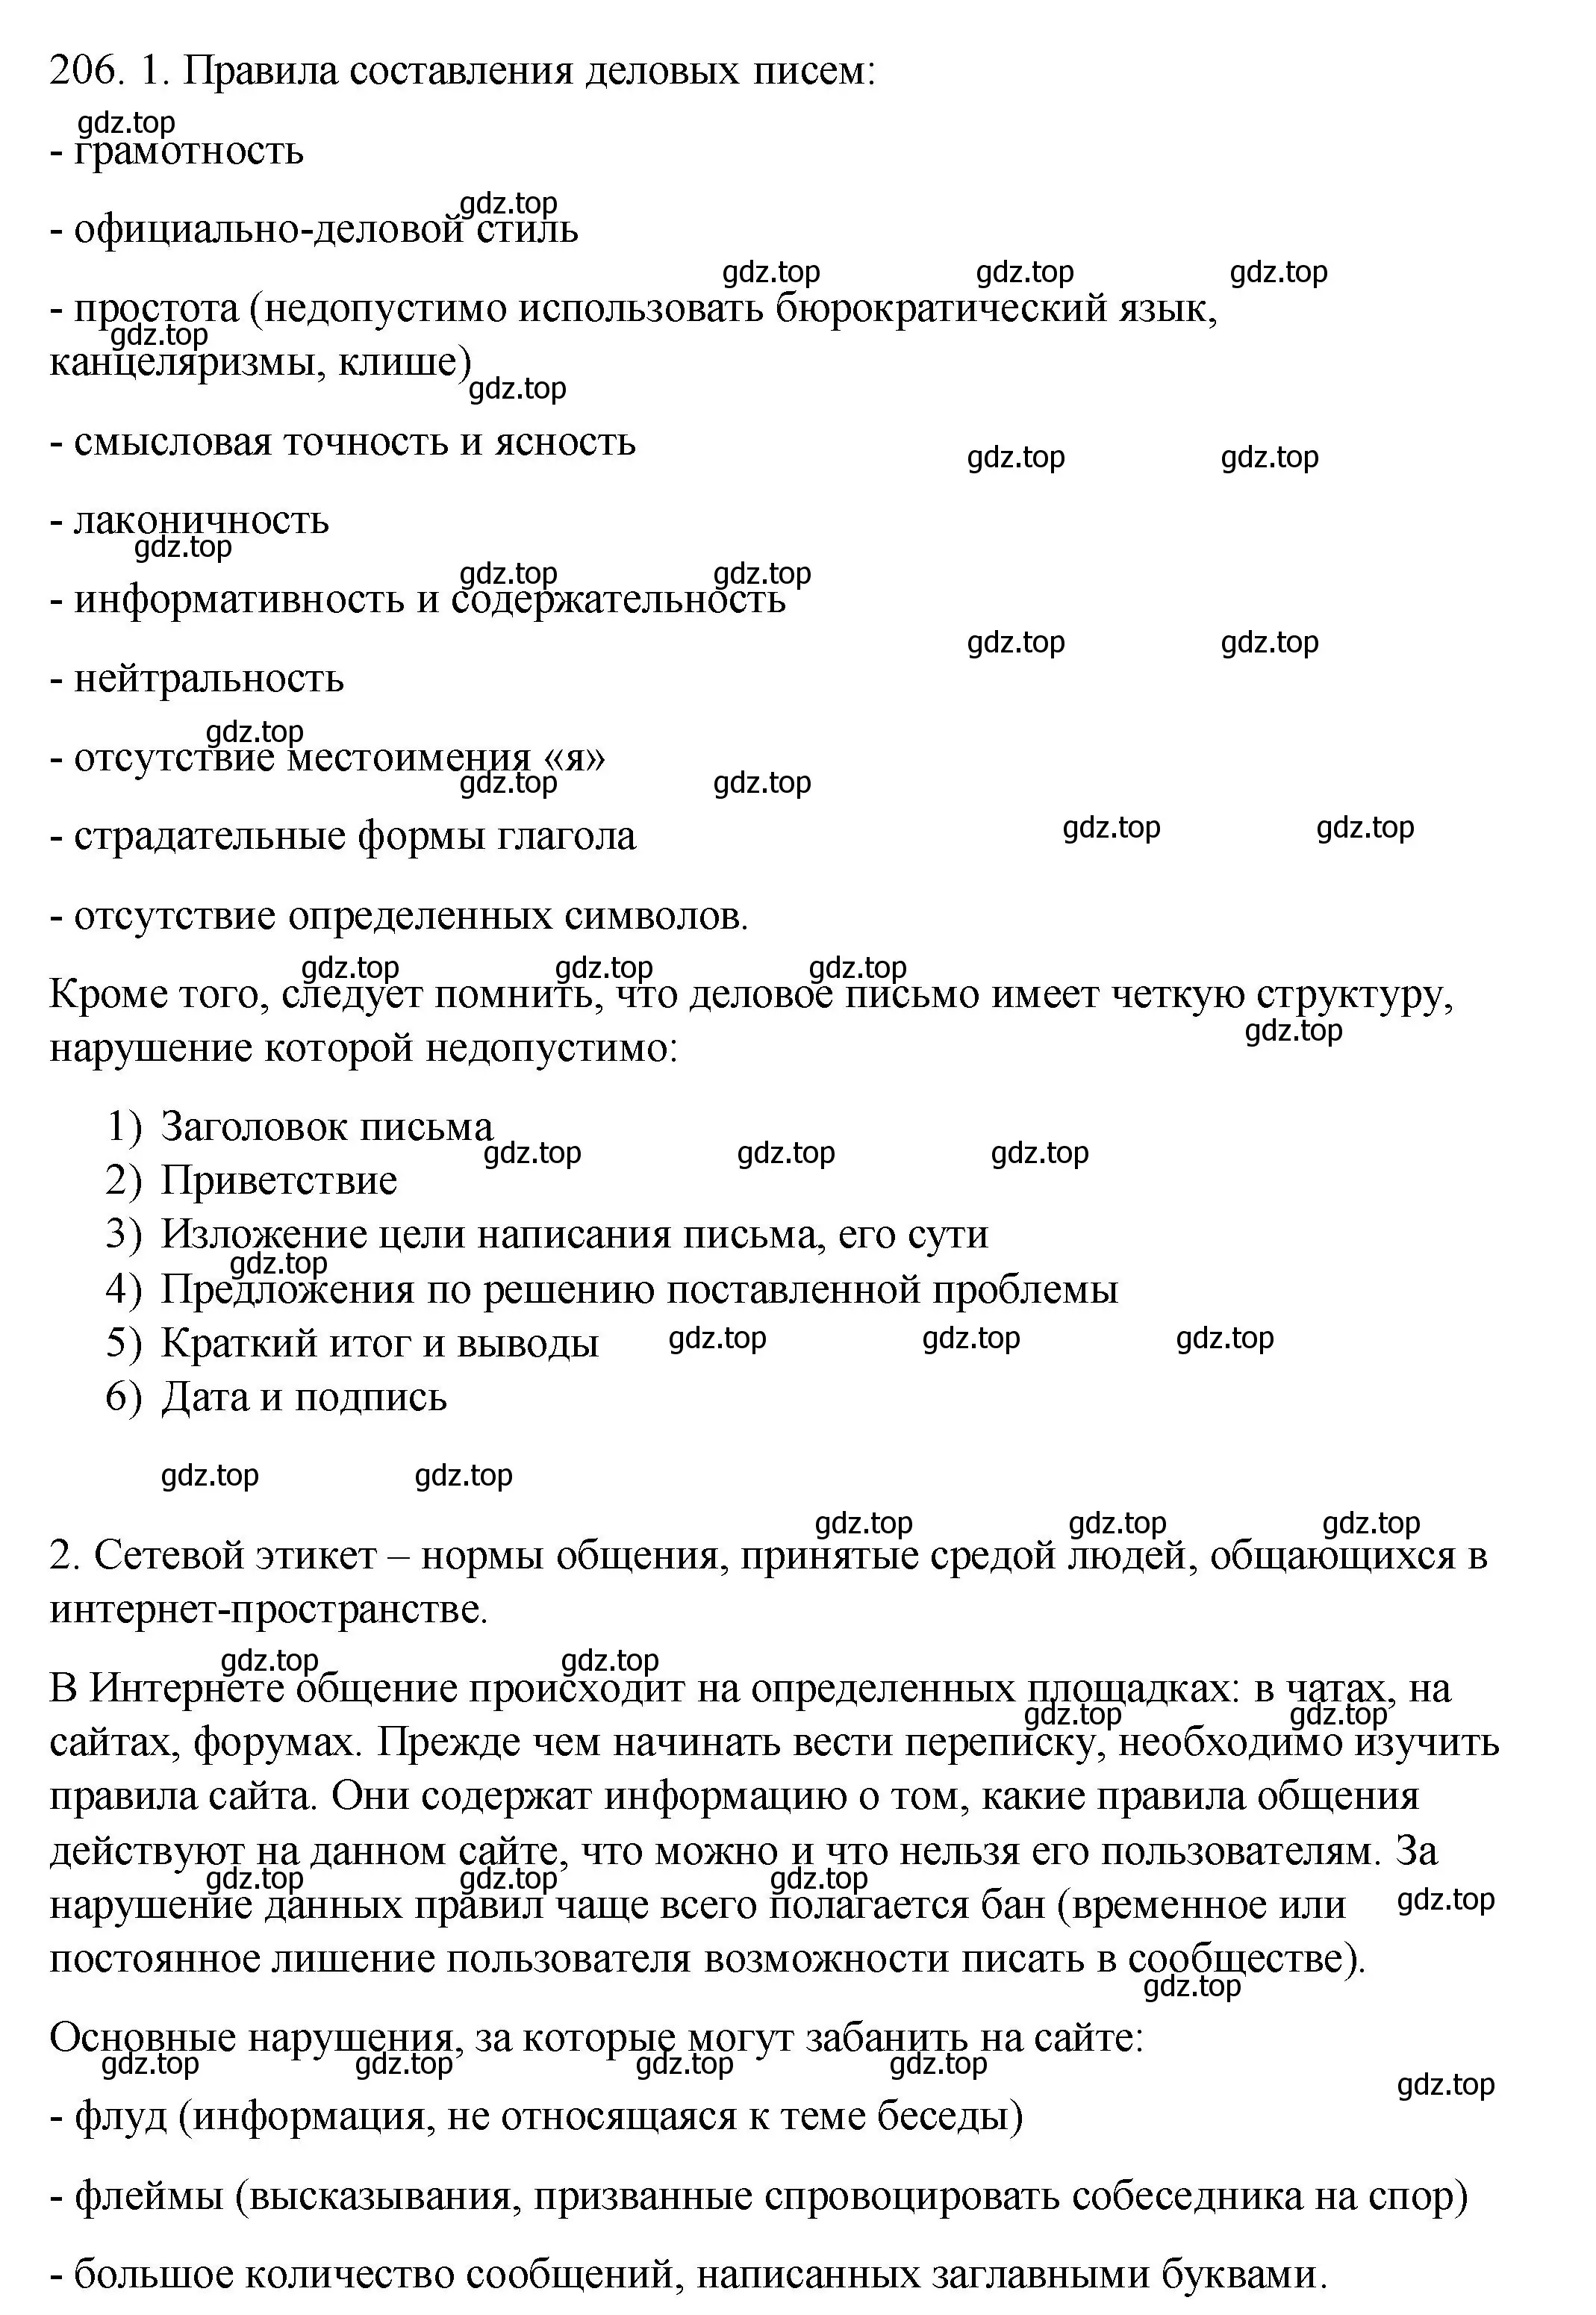 Решение номер 206 (страница 284) гдз по русскому языку 10-11 класс Гольцова, Шамшин, учебник 2 часть